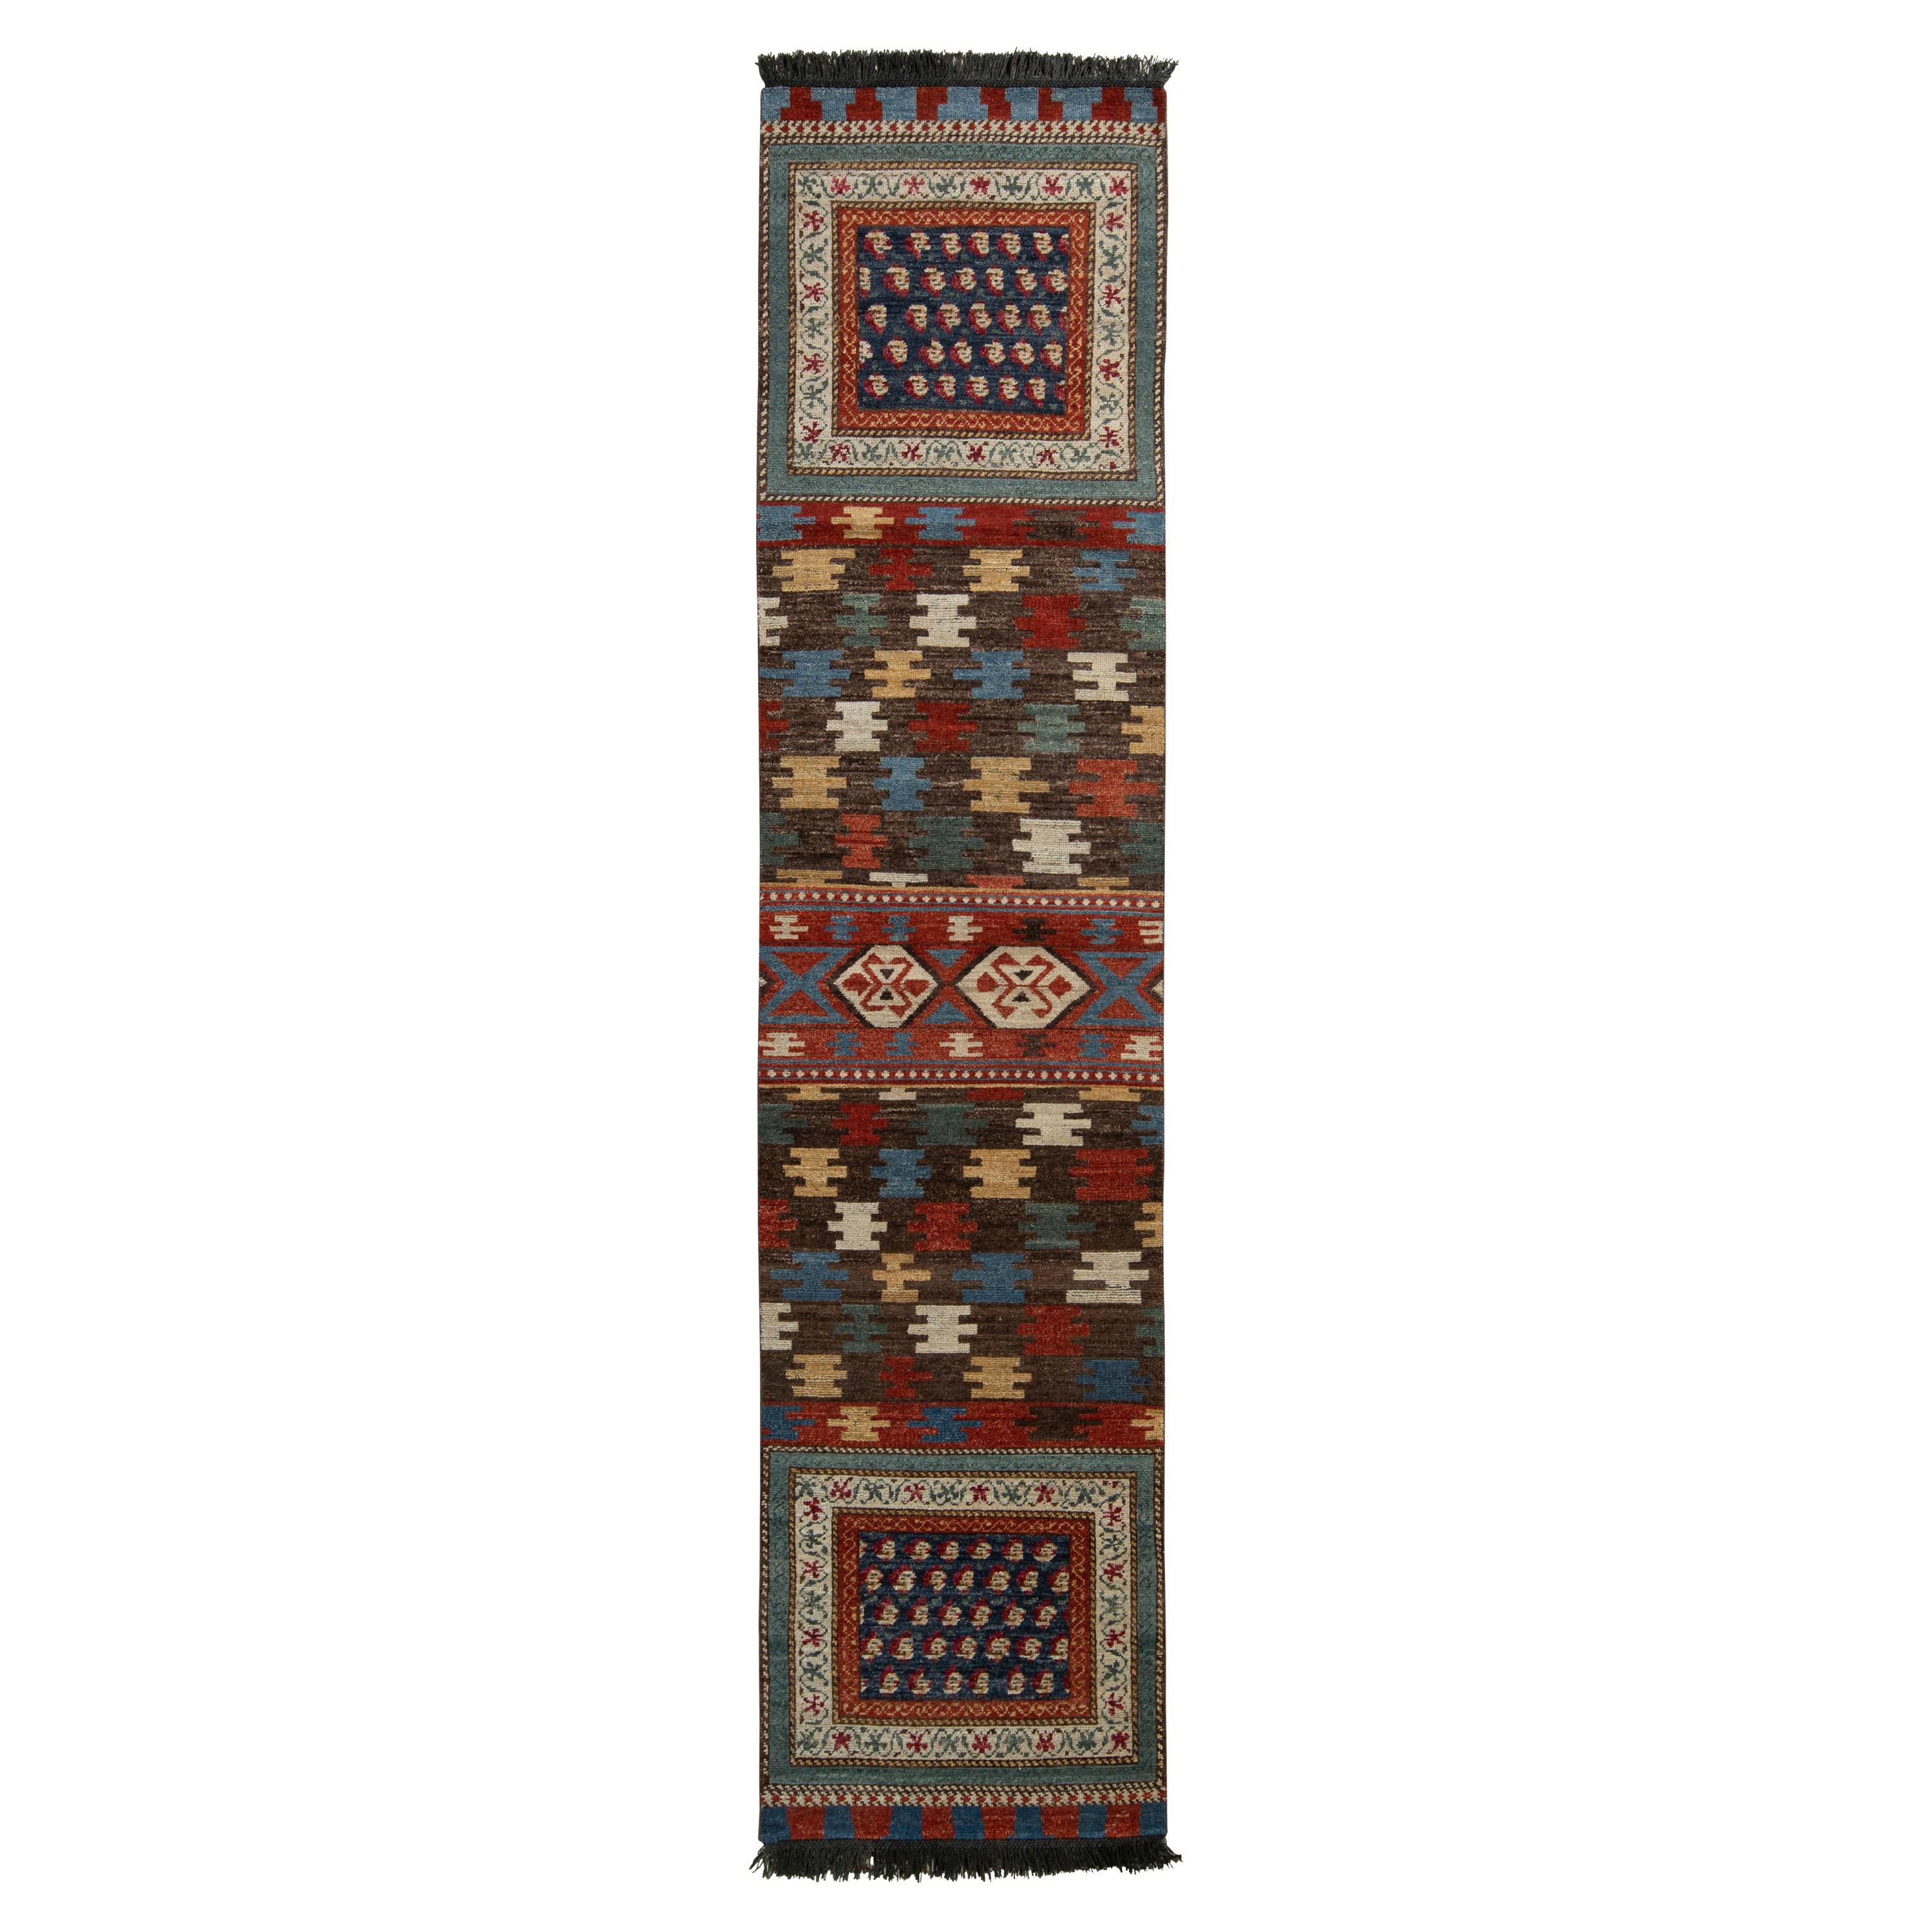 Tapis et tapis de couloir Kilims de style tribal en motif géométrique beige-marron sur toute la surface